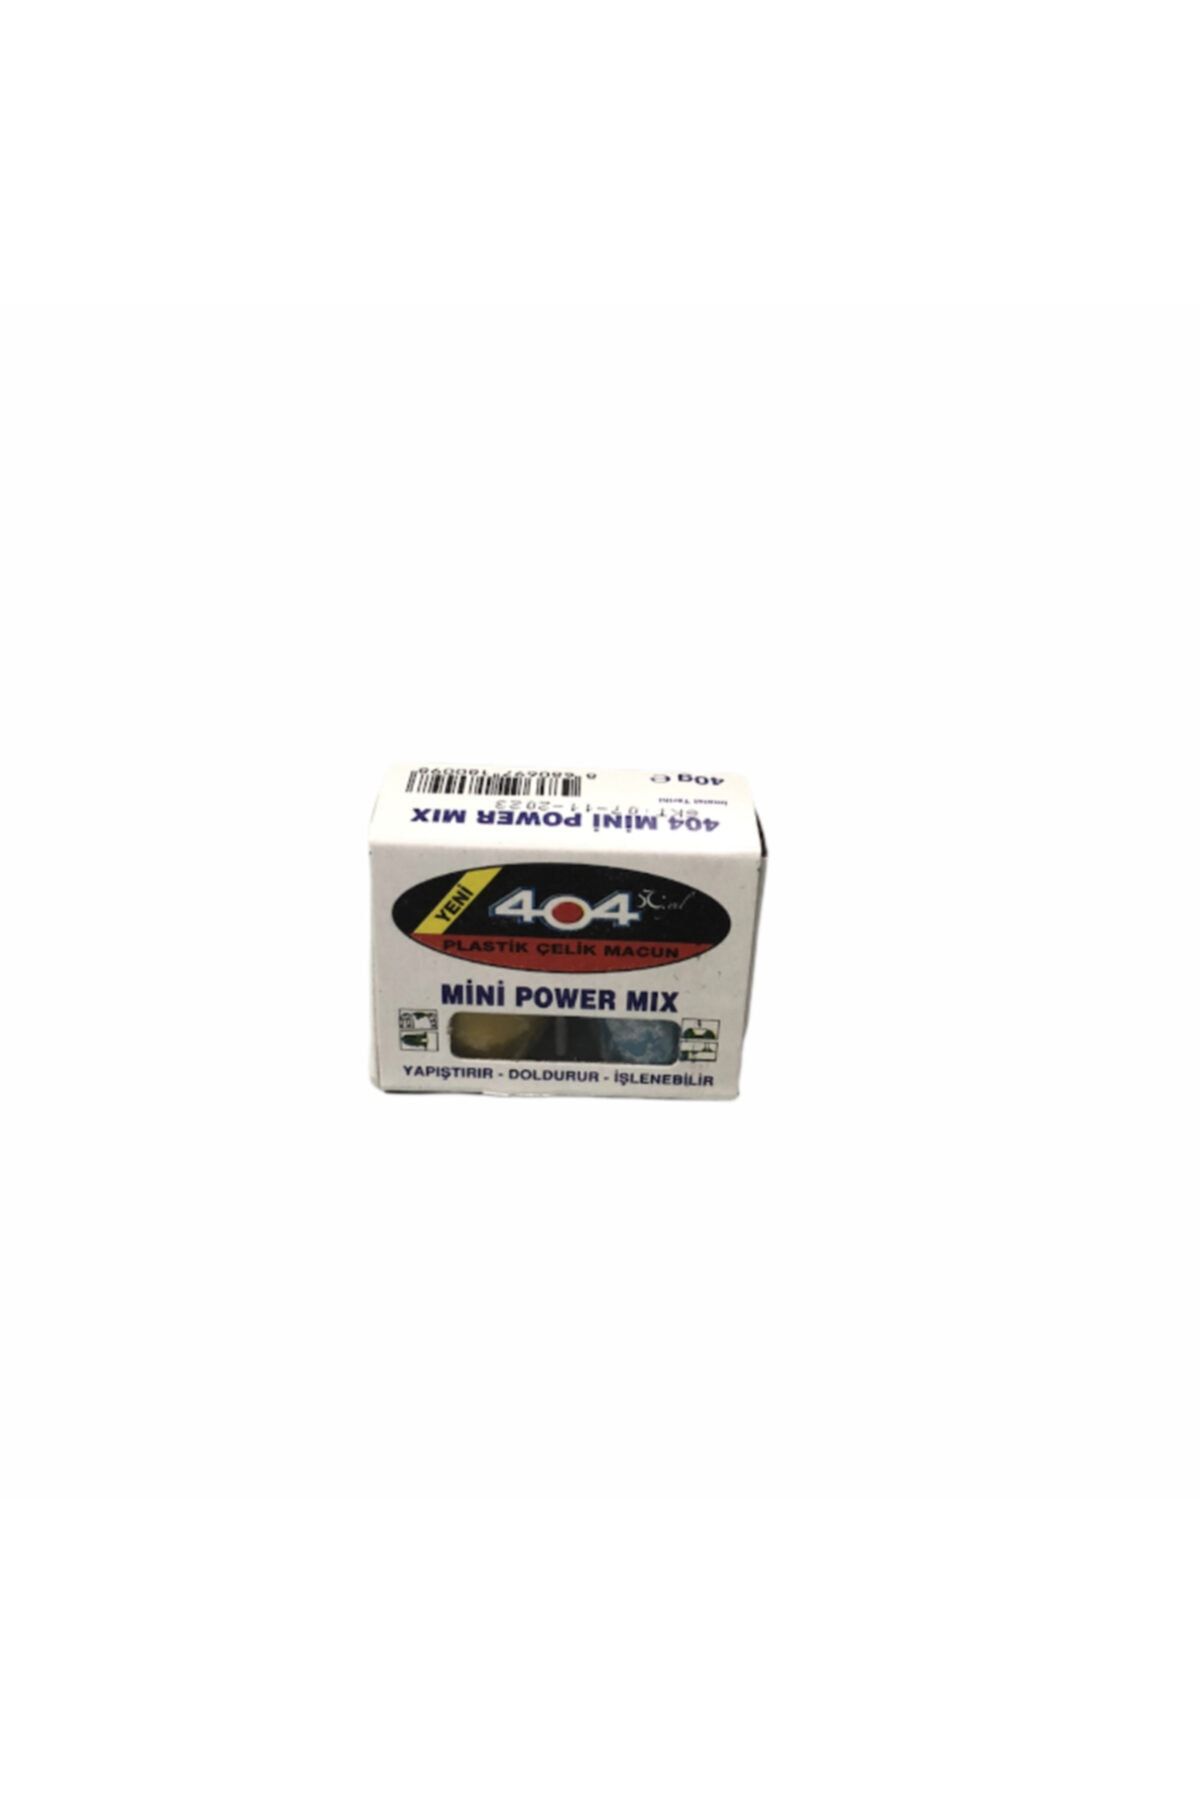 404 Mini Power Mix Plastik Çelik Macun